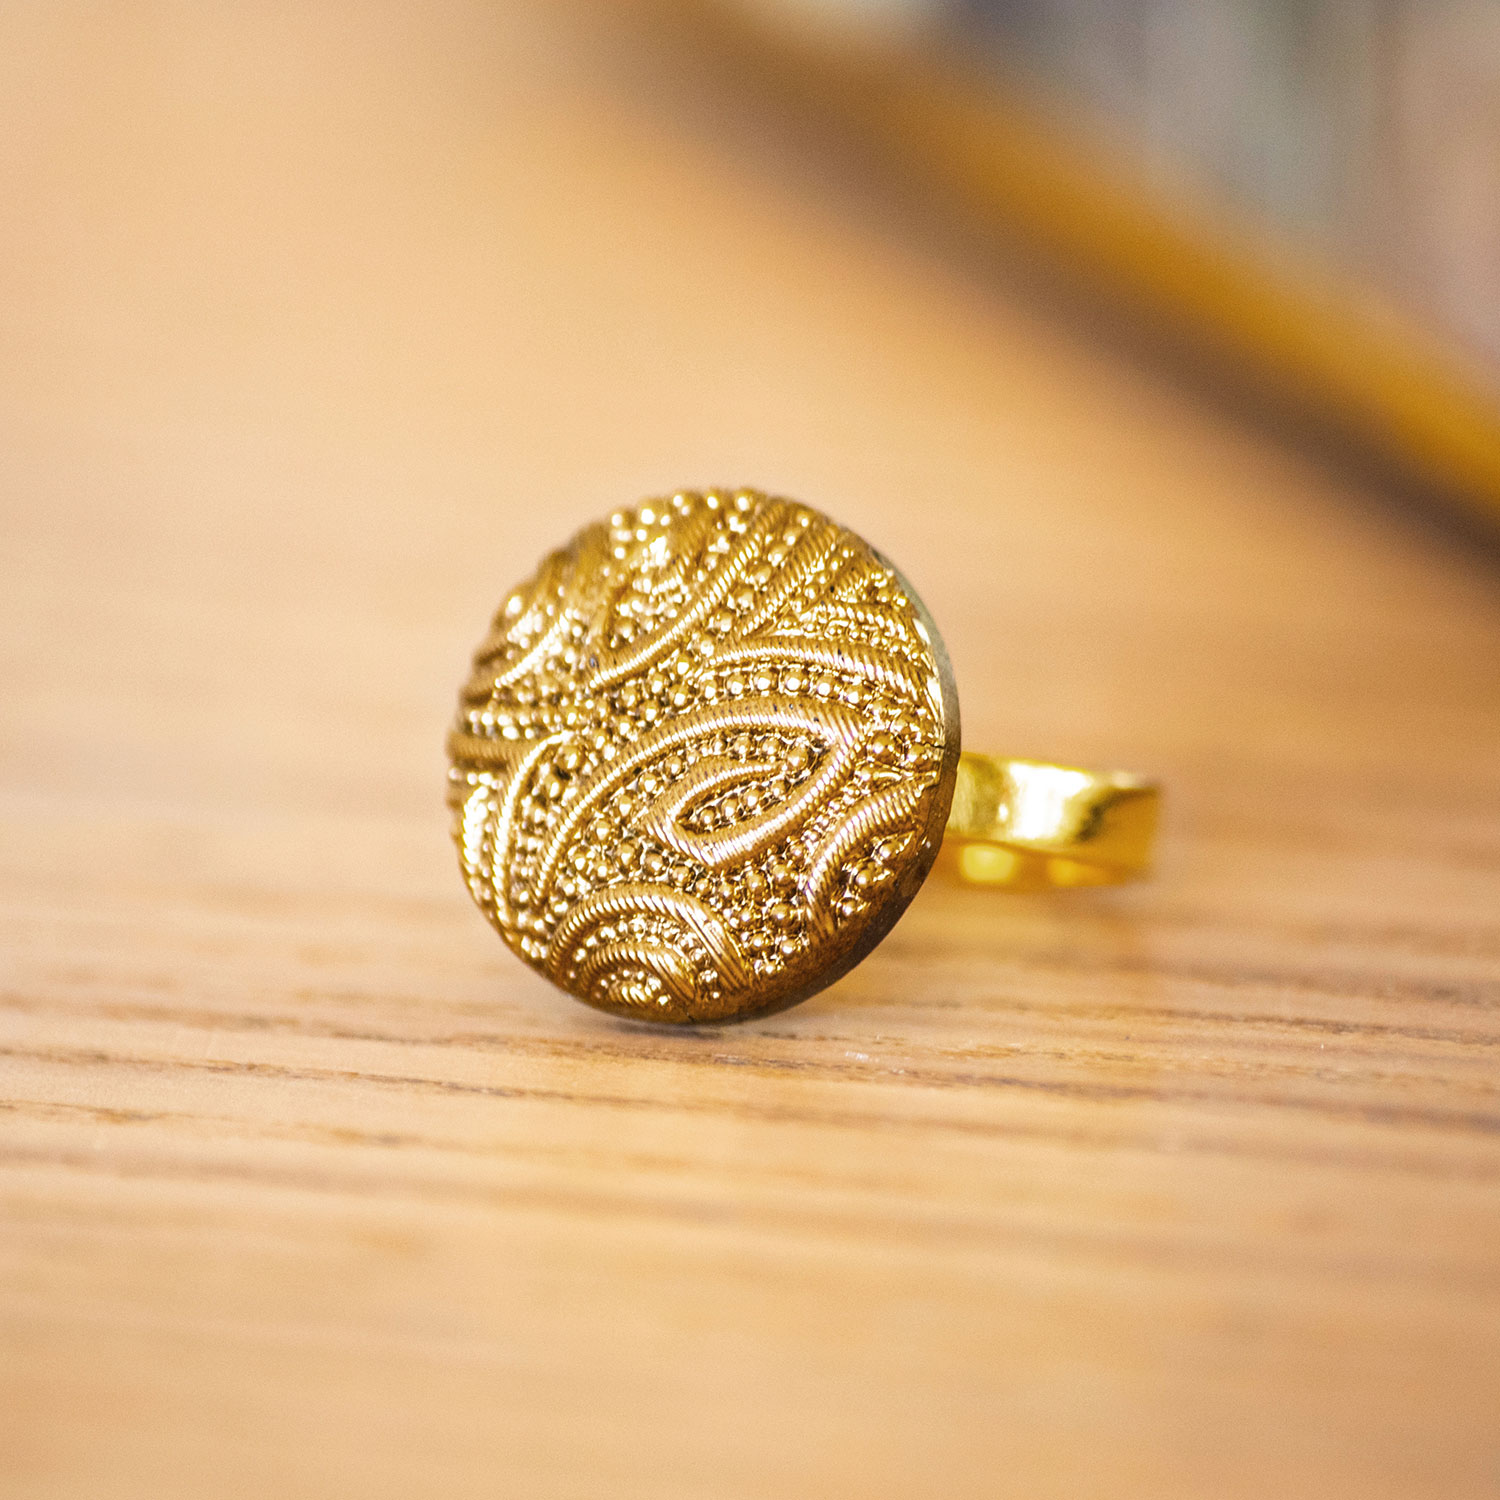 Assuna – zoom Petite bague Garance dorée – bouton ancien – inspiration vintage